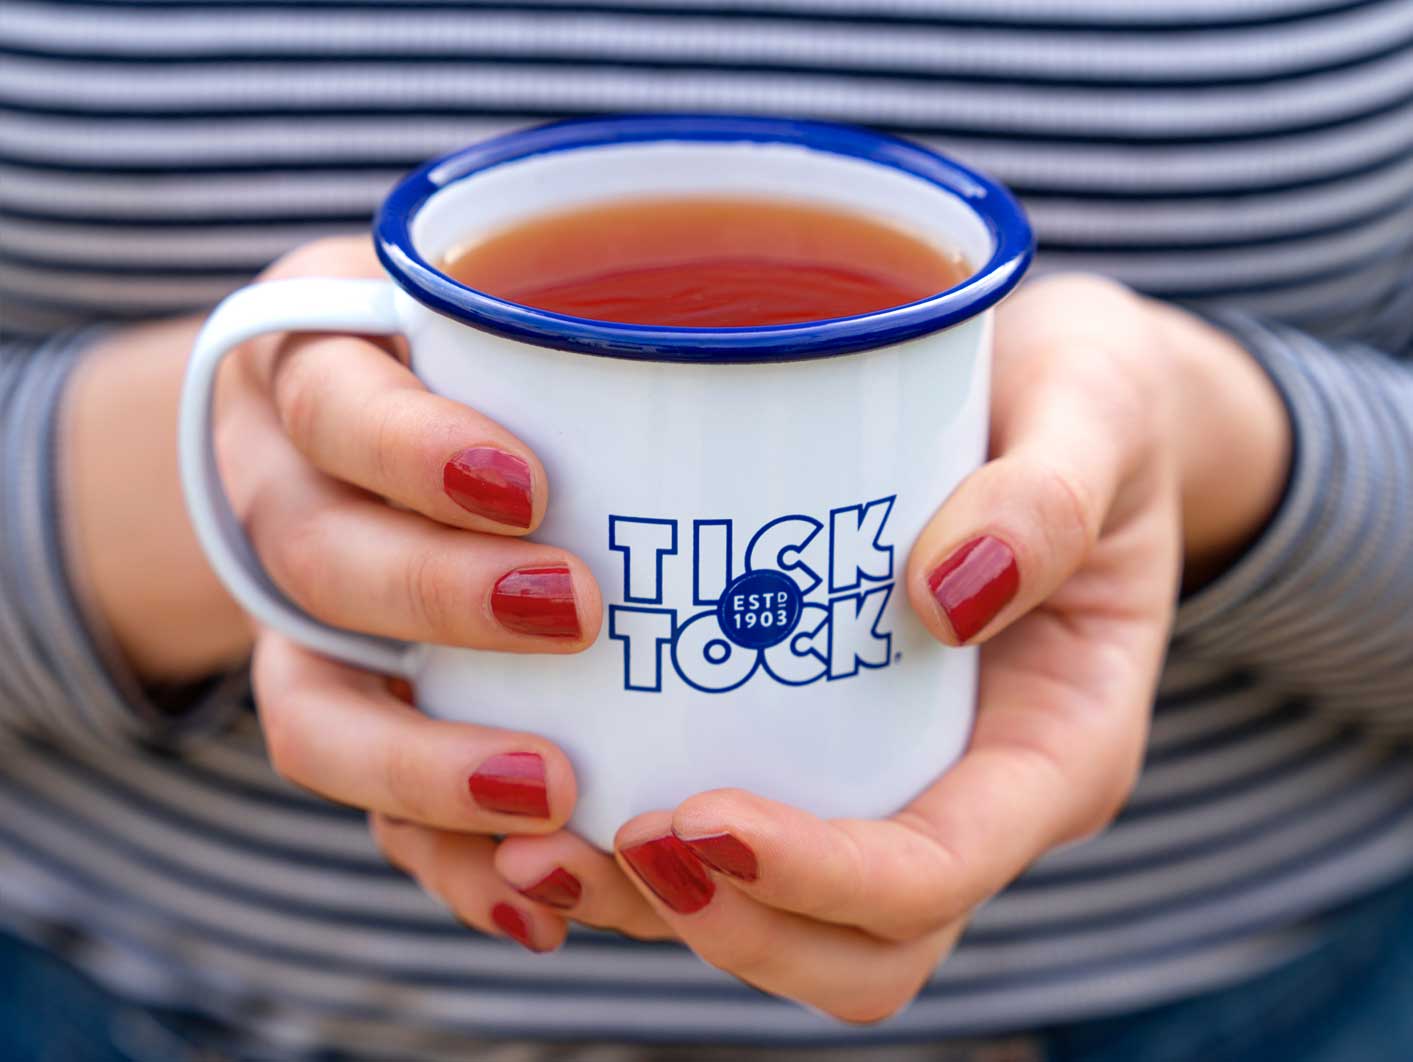 Lady holding mug of tea